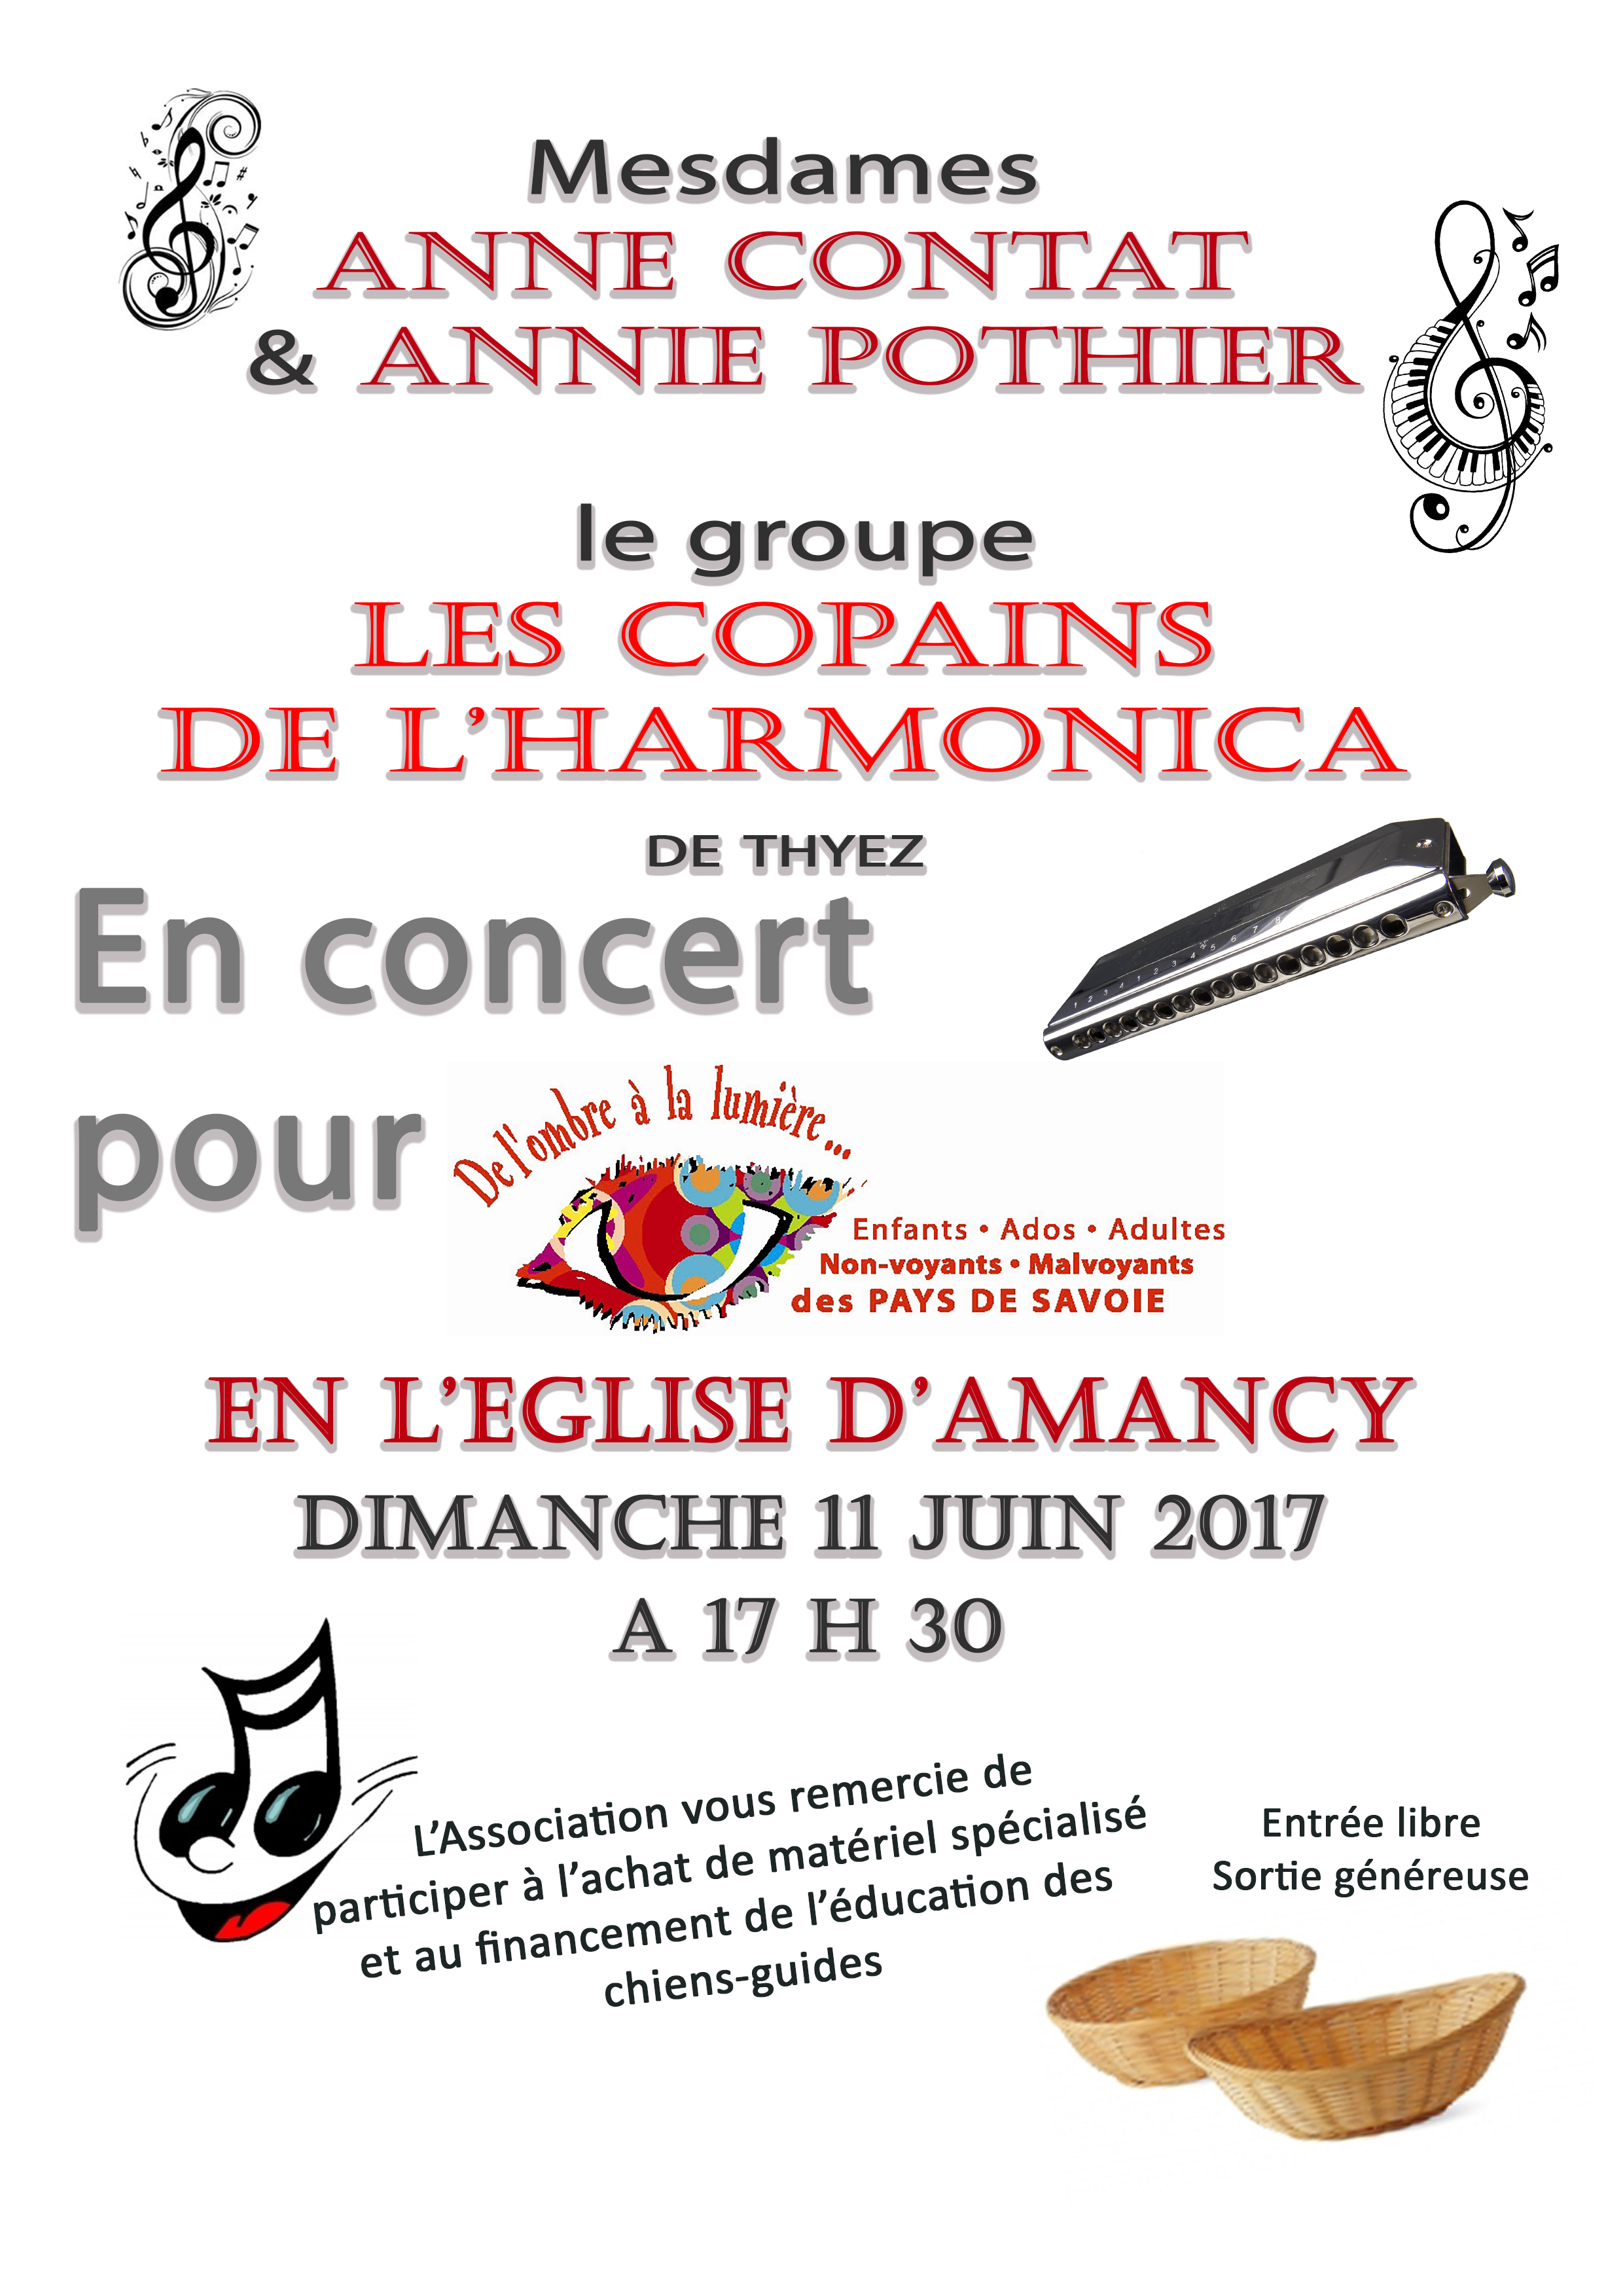 Affiche du concert du 11 juin 2017 avec anne contat, annie pothier et les harmonicistes de thyez